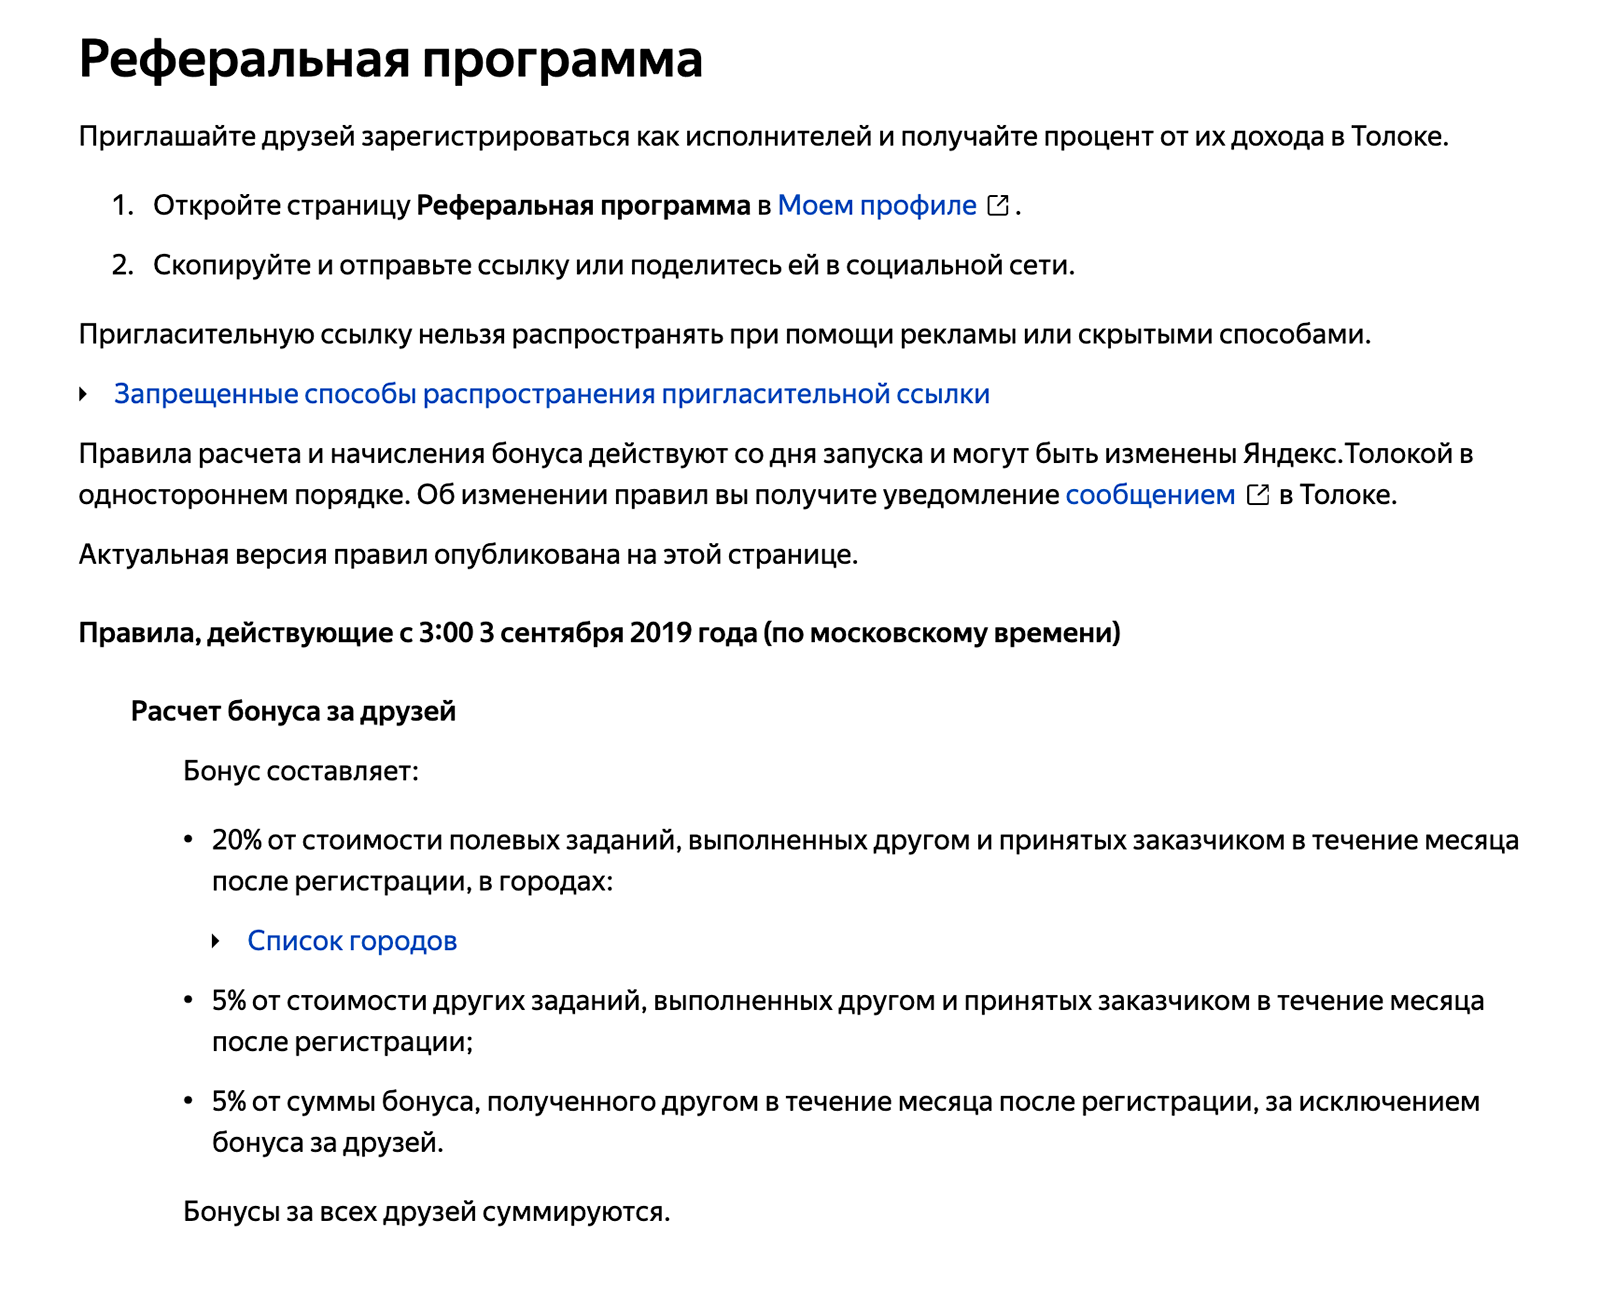 Реферальная программа «Яндекс-толоки». Размер бонуса зависит от города друга